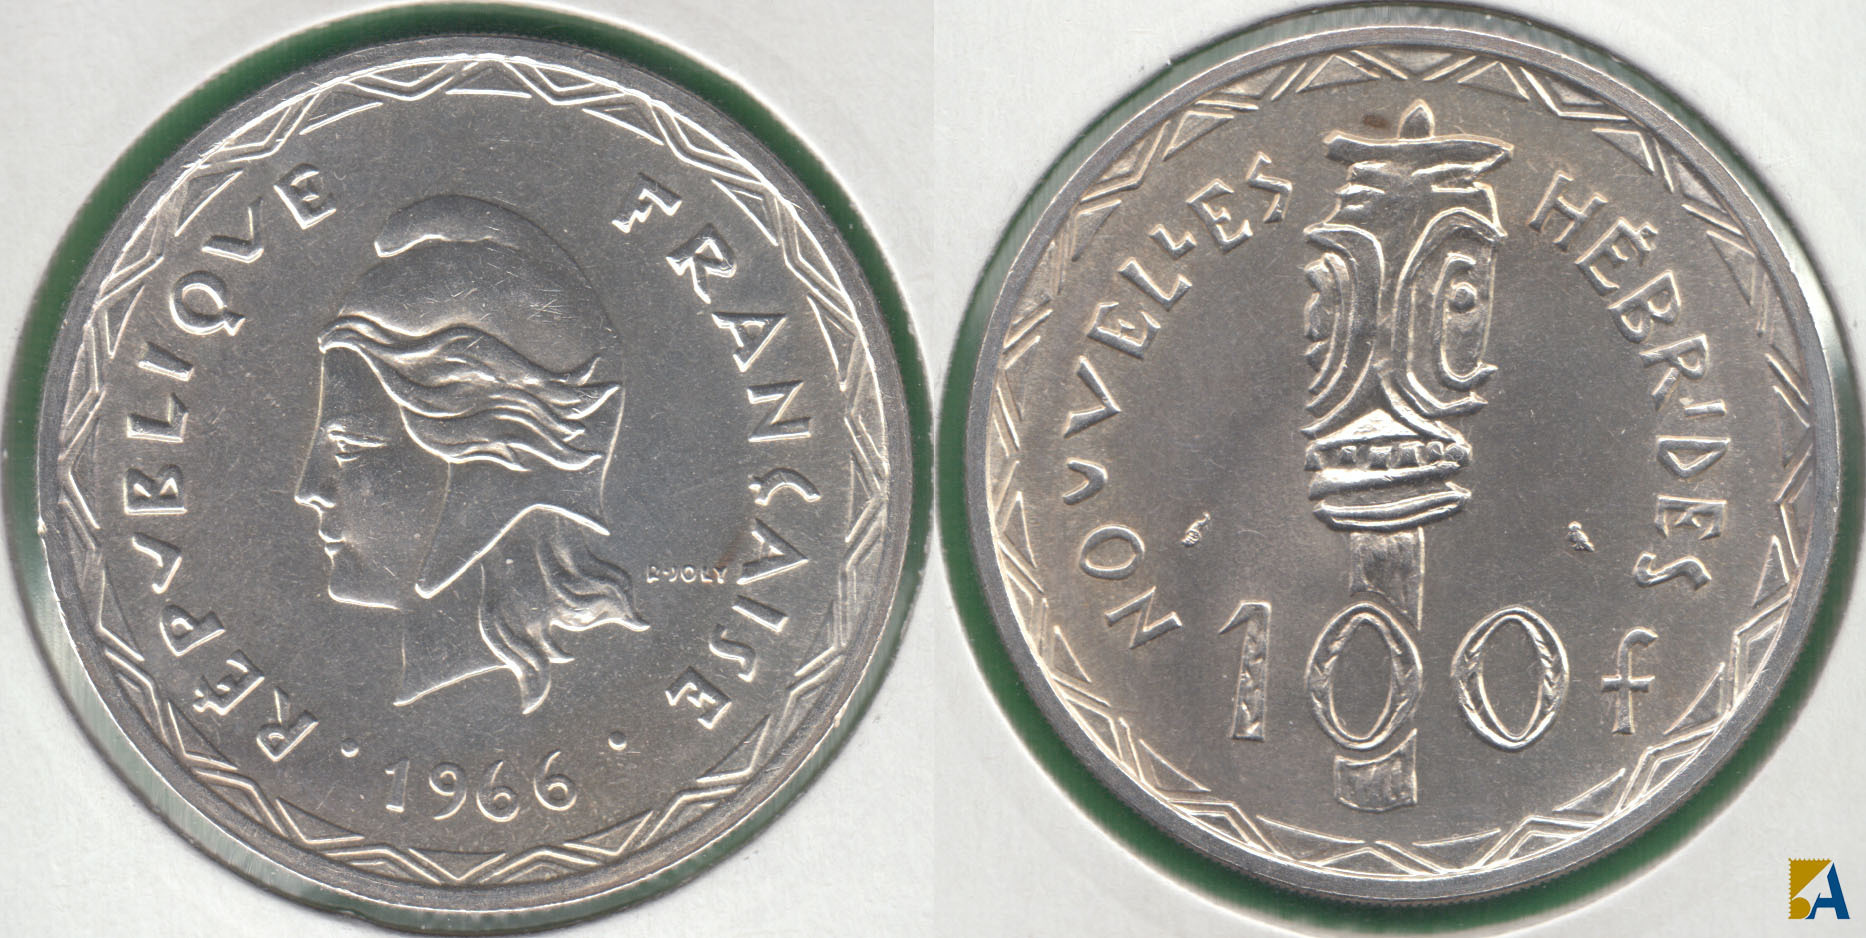 FRANCIA - FRANCE. 100 FRANCOS (FRANCS) DE 1966. PLATA 0.835.